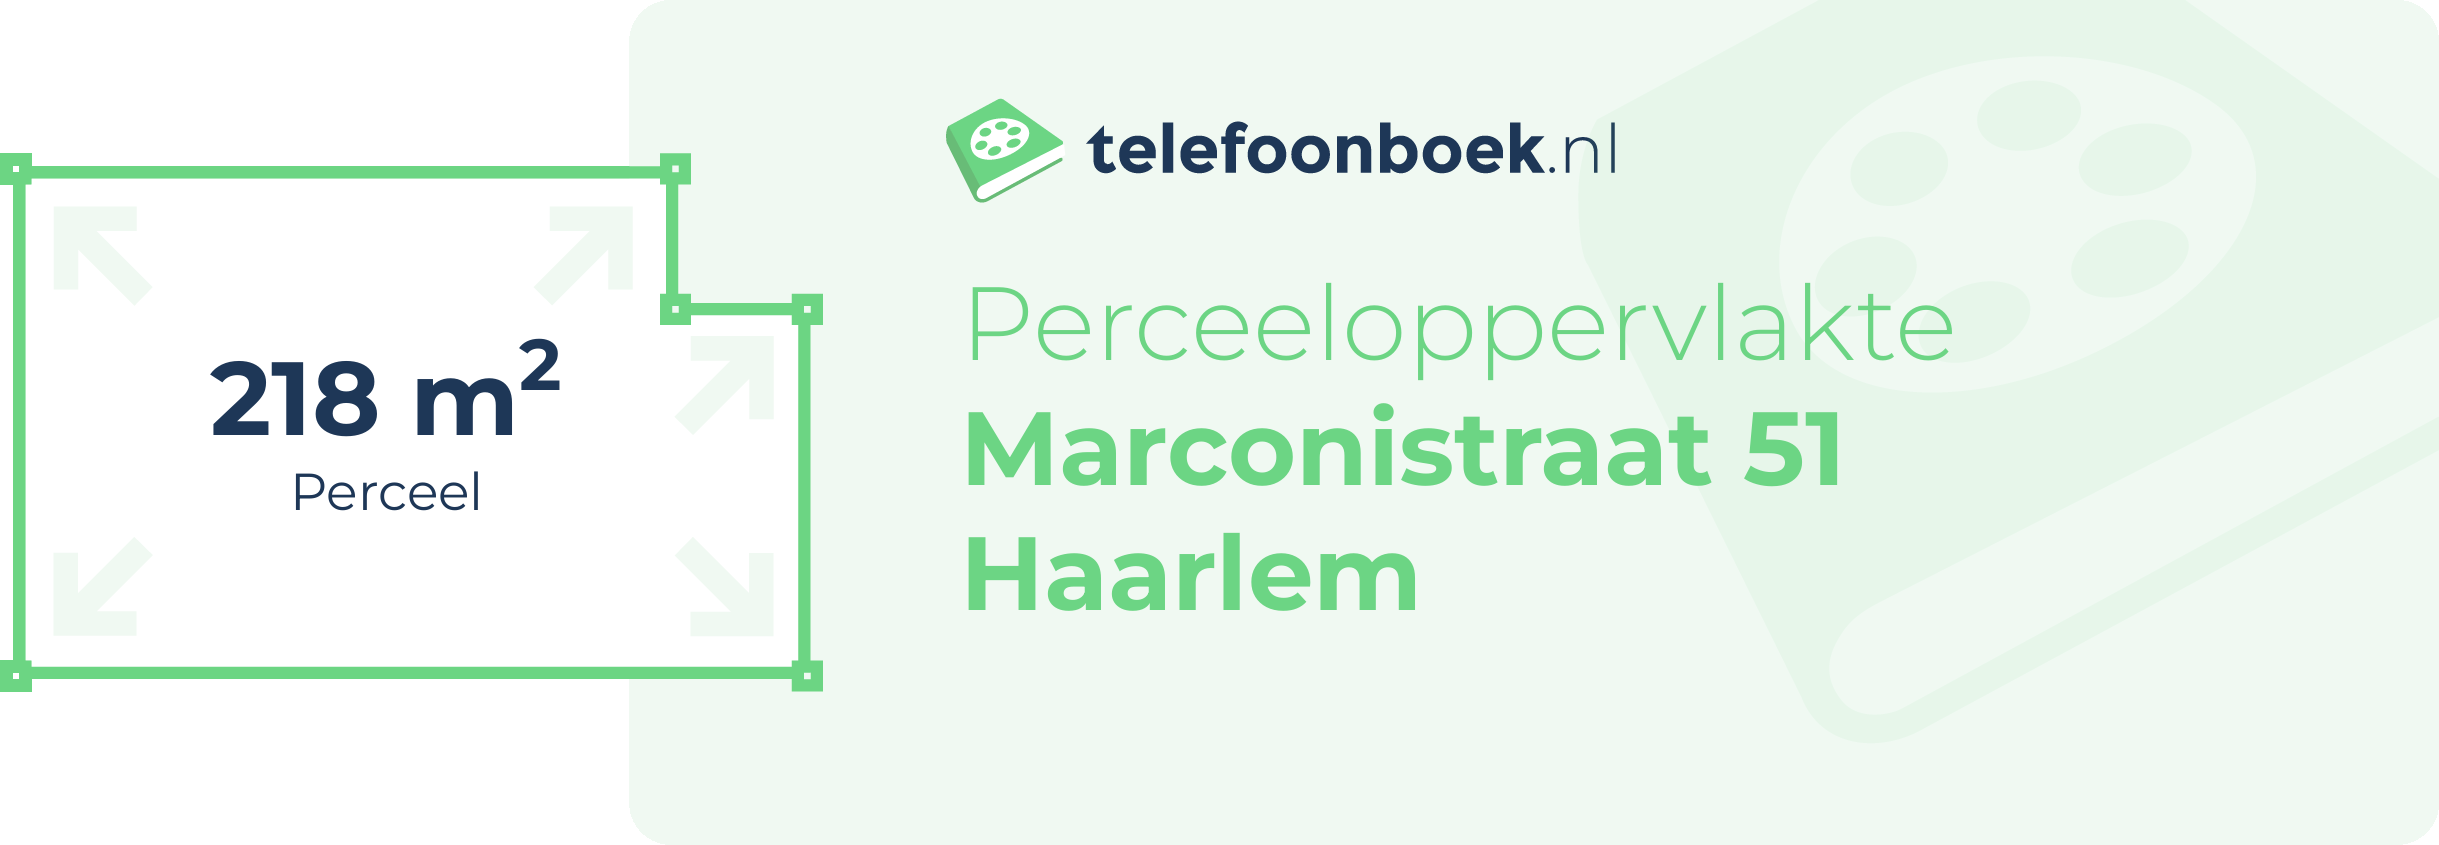 Perceeloppervlakte Marconistraat 51 Haarlem